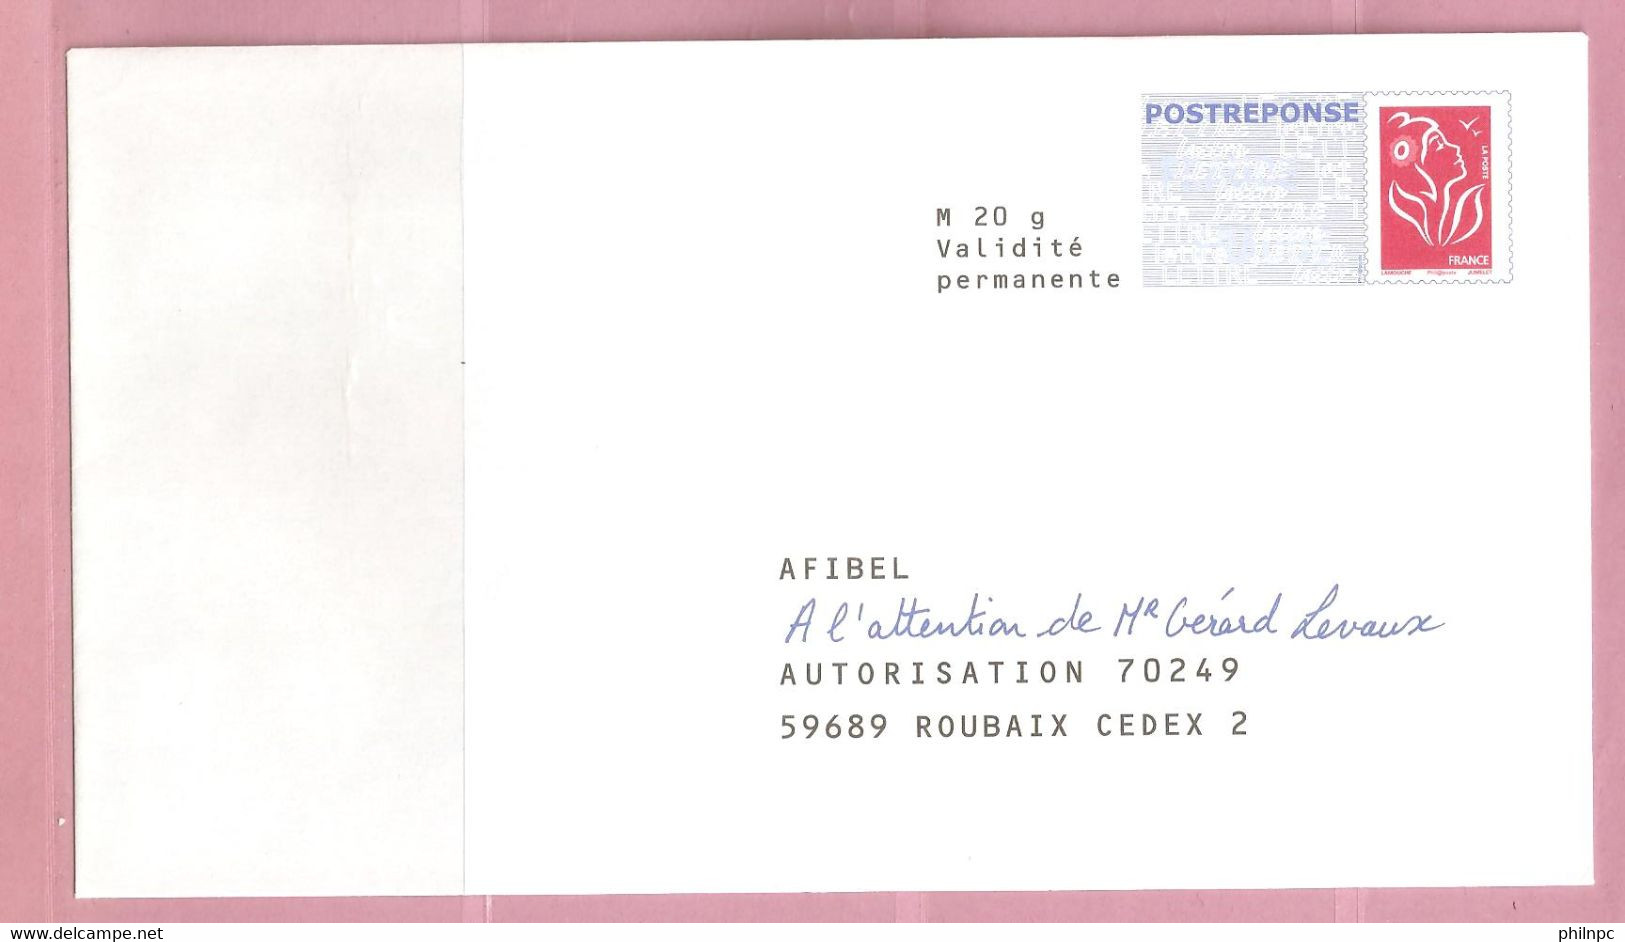 France, Prêt à Poster Réponse, 3734A, Postréponse, AFIBEL, Marianne De Lamouche - Prêts-à-poster:Answer/Lamouche